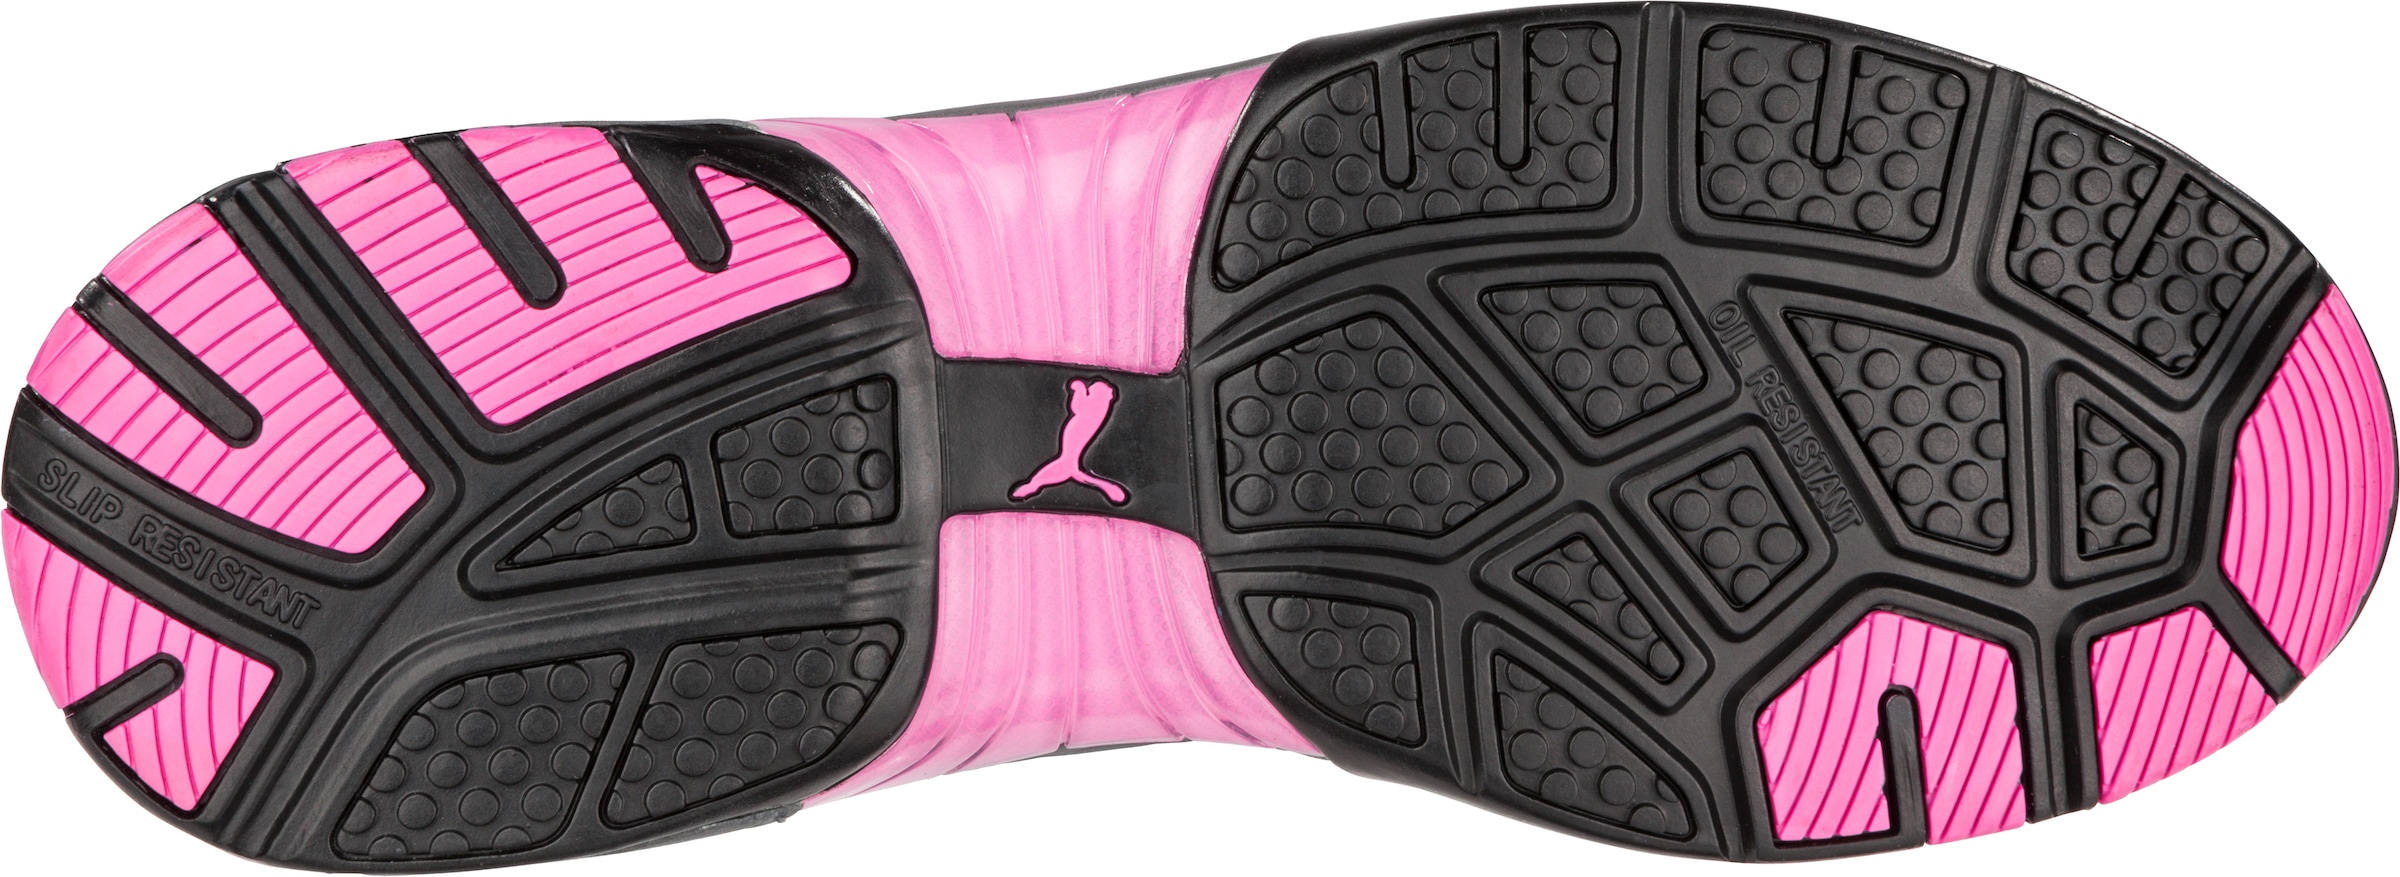 PUMA Safety Knit Garantie Jahren kaufen Pink«, »Celerity 3 XXL IQ.CELL S1 mit Damen Fußbett, Sicherheitsschuh online Arbeitsschuh, BreathActive Futter | dämpfendes